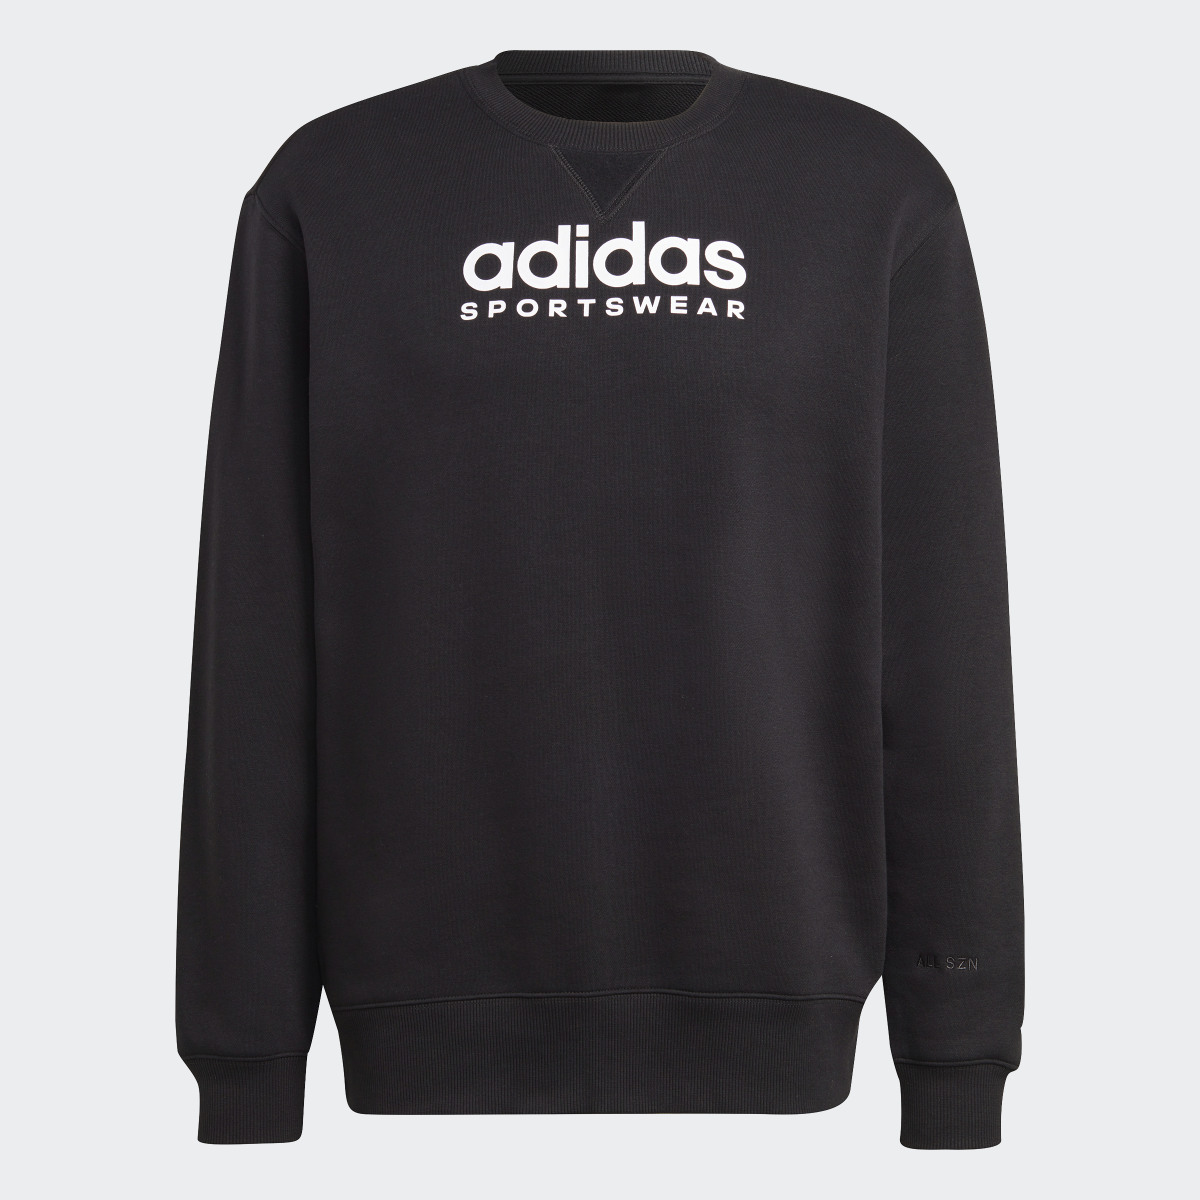 Adidas All SZN Fleece Graphic Sweatshirt. 6